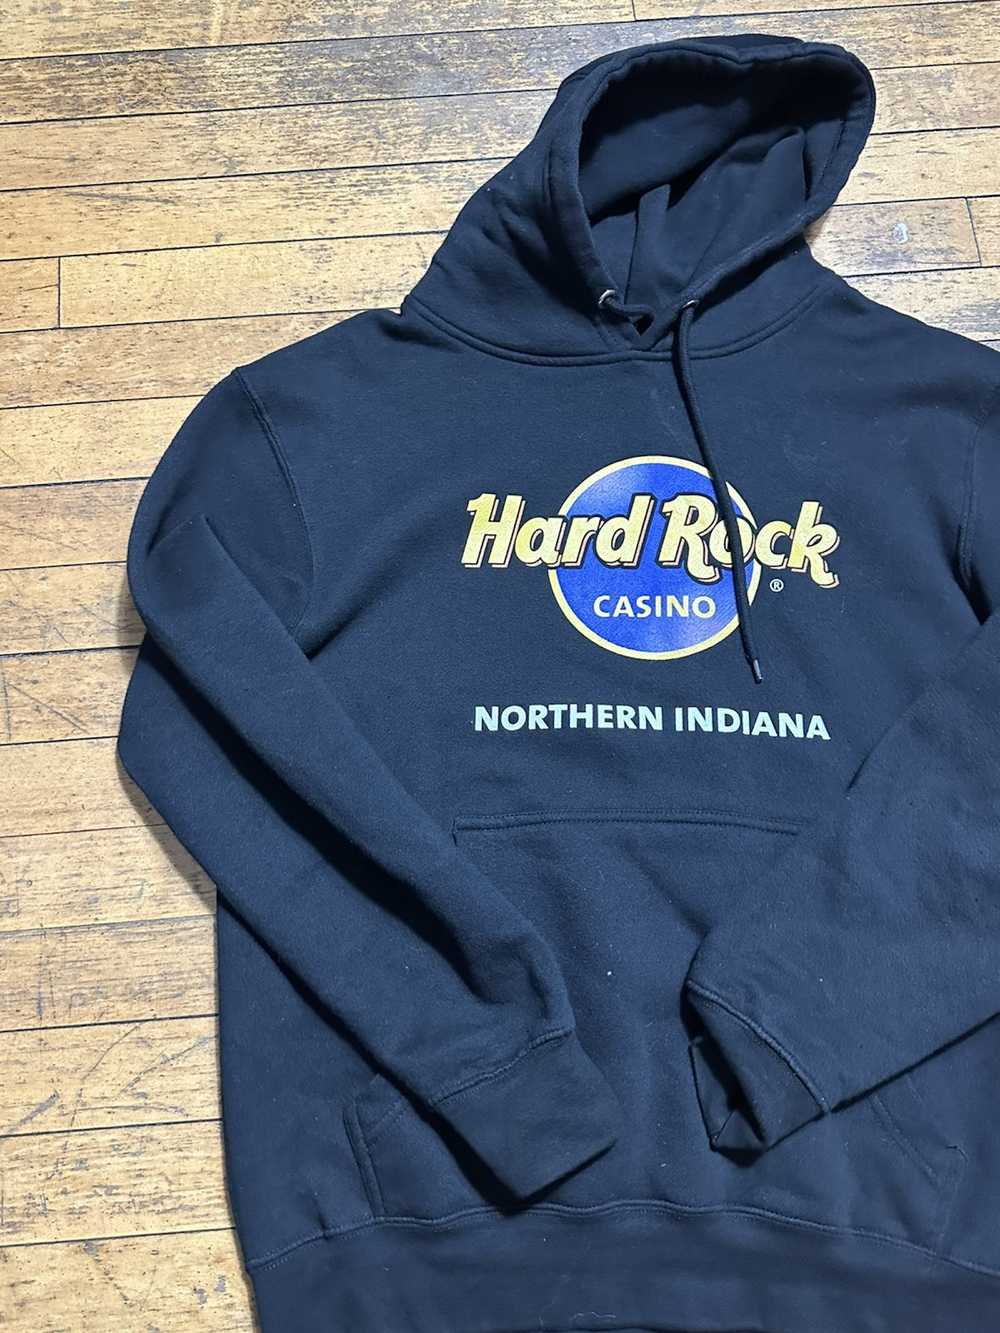 Hard Rock Cafe hard rock hoodie - image 4